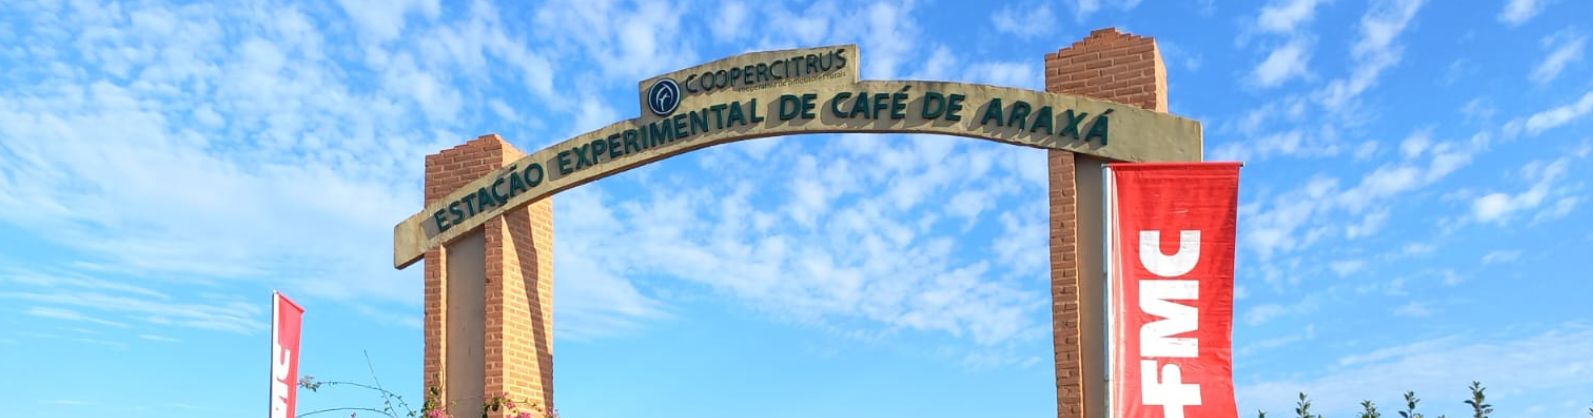 Estação Experimental da Coopercitrus em Araxá dissemina boas práticas e novas tecnologias para o cultivo de café